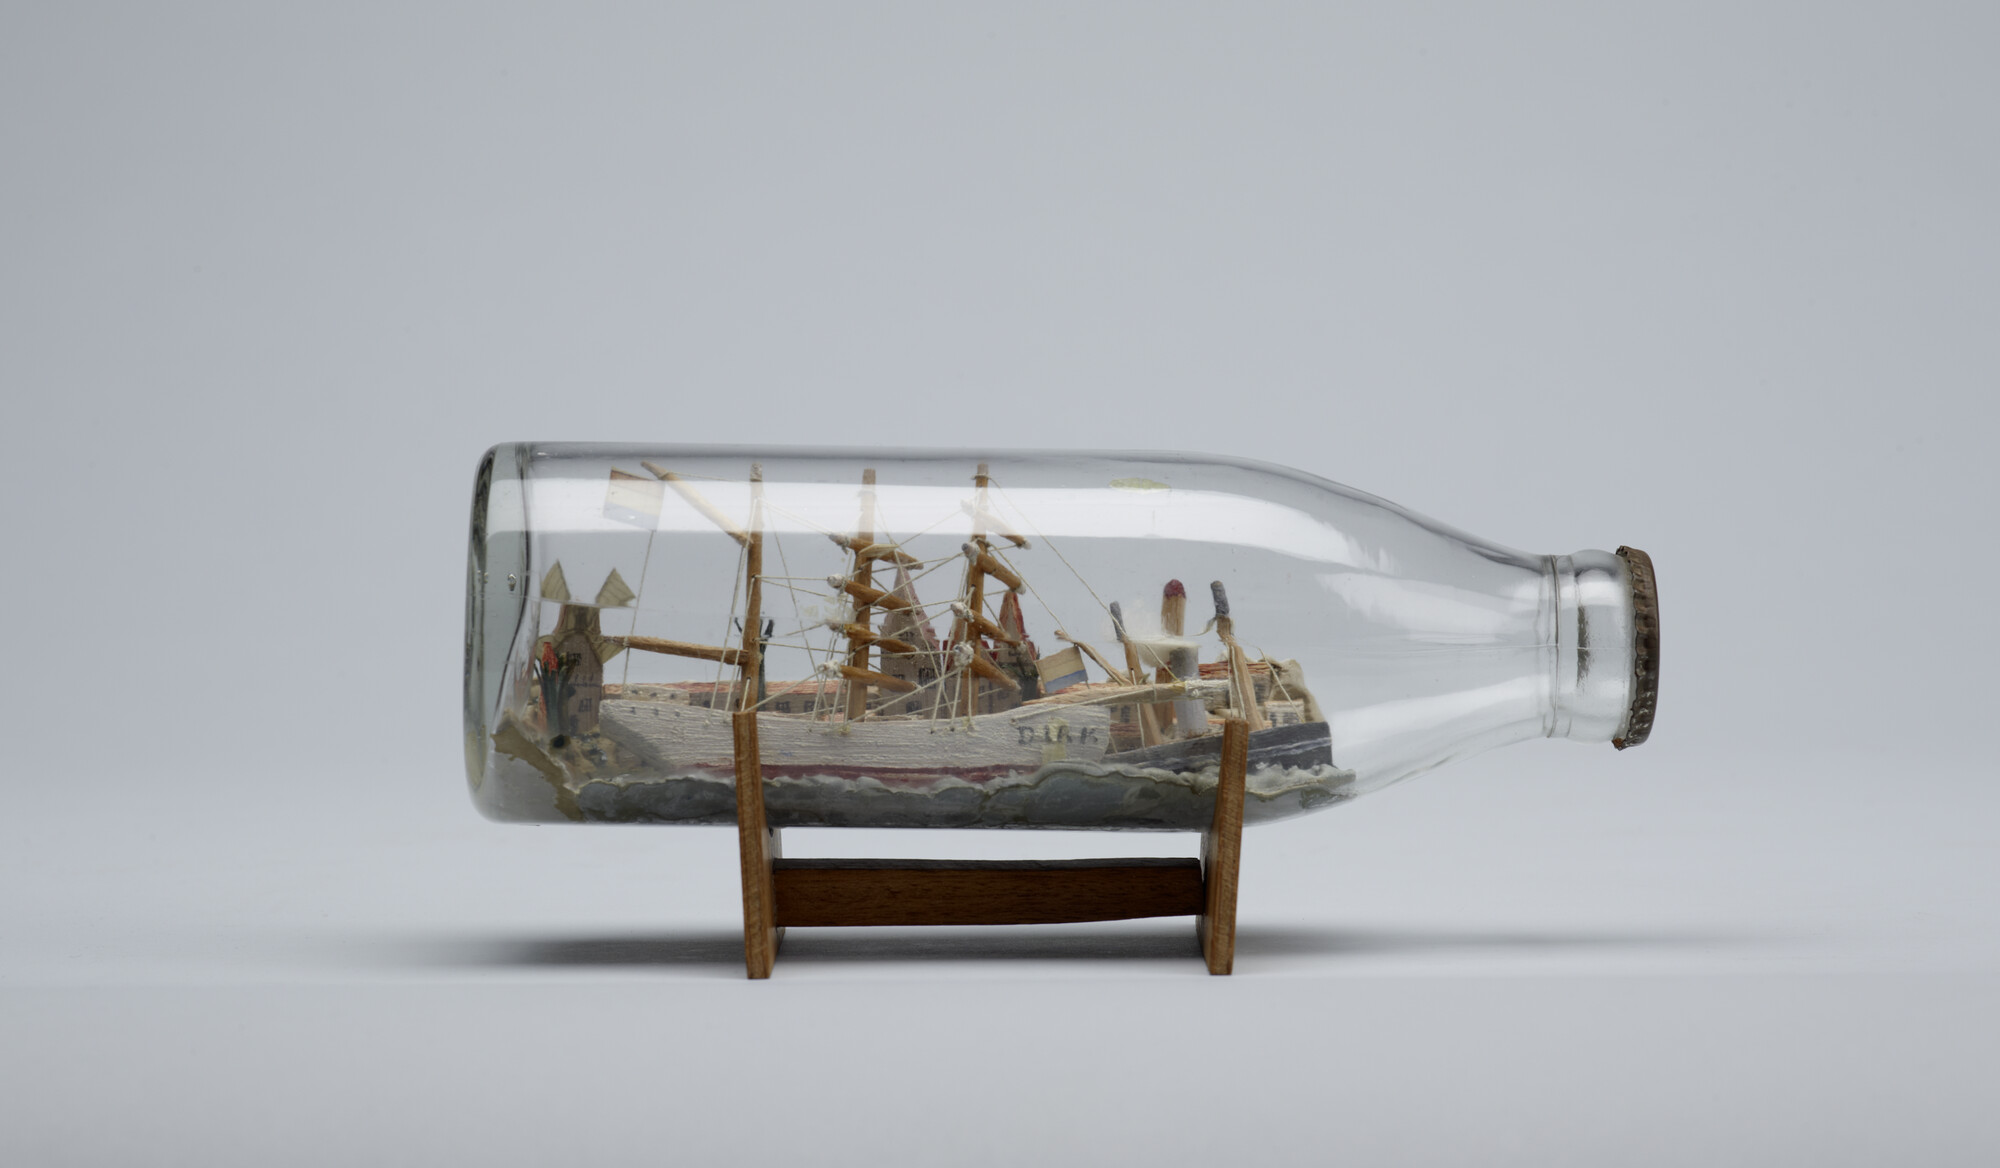 2014.0605; Model van de barkentijn Dirk in een fles; scheepsmodel